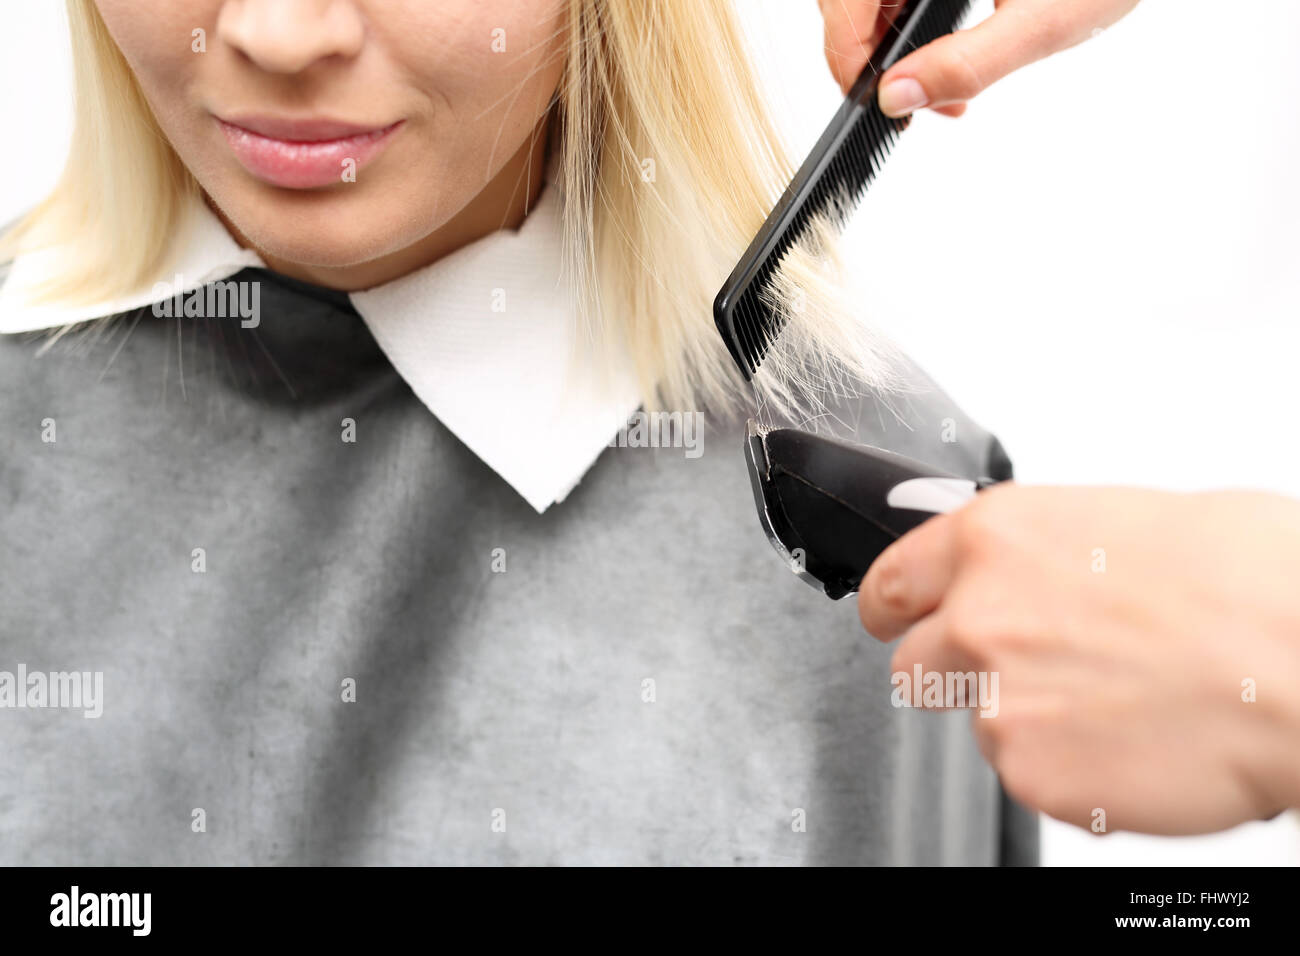 Cutting hair clippers. Haircut.. Woman hairdresser cuts hair tips Stock Photo